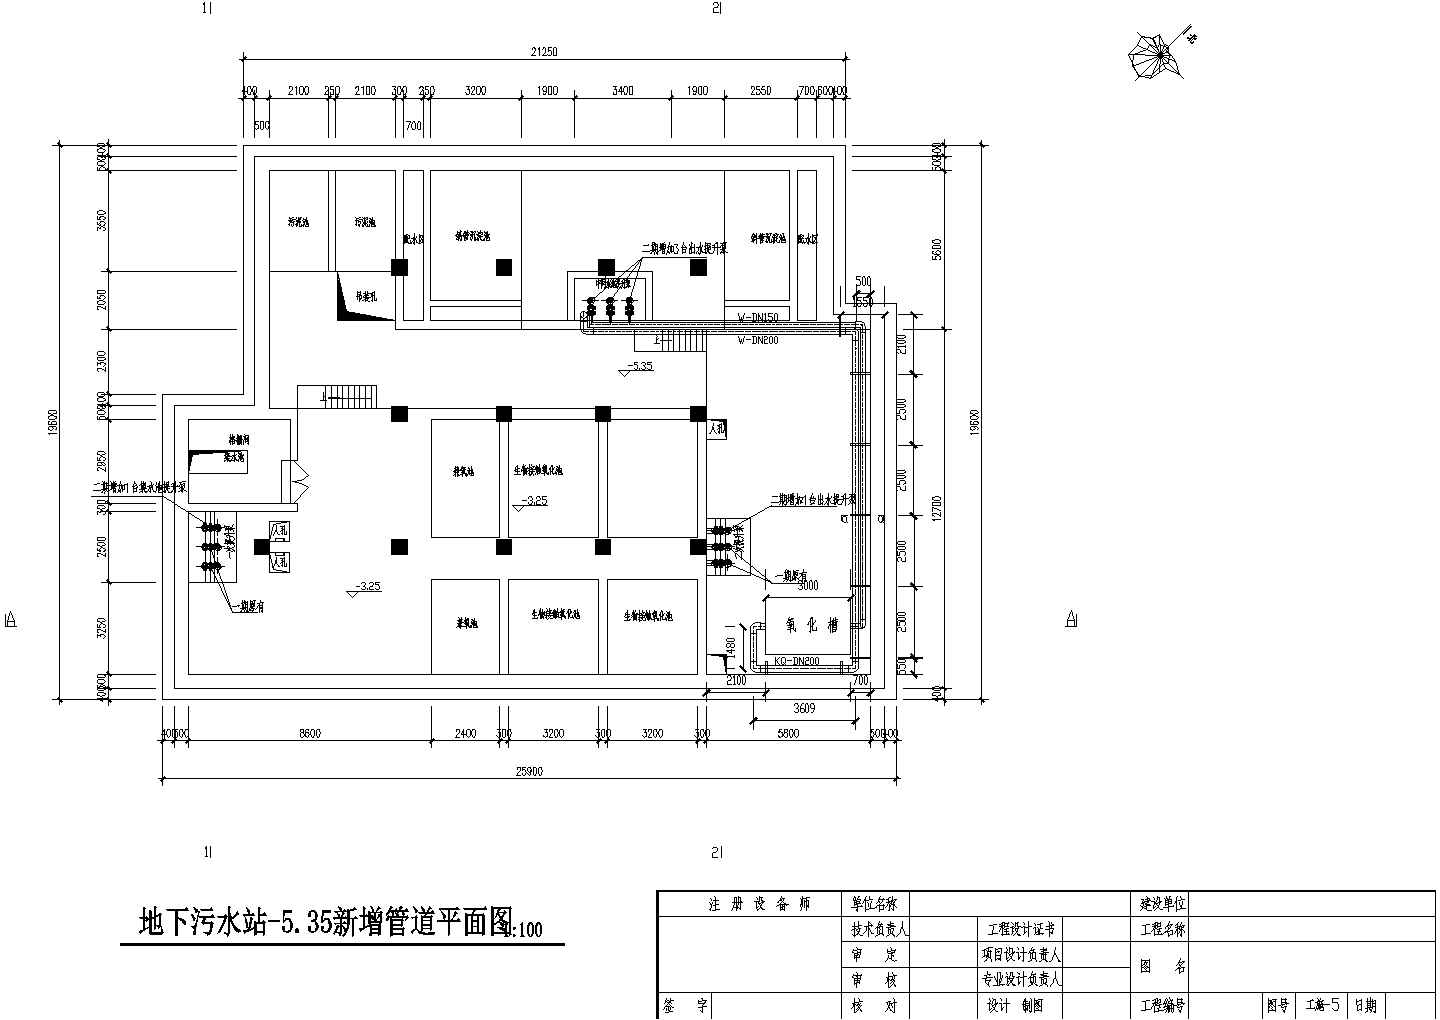 【哈尔滨】某医院废水改造工程CAD环保设计完整详细施工图